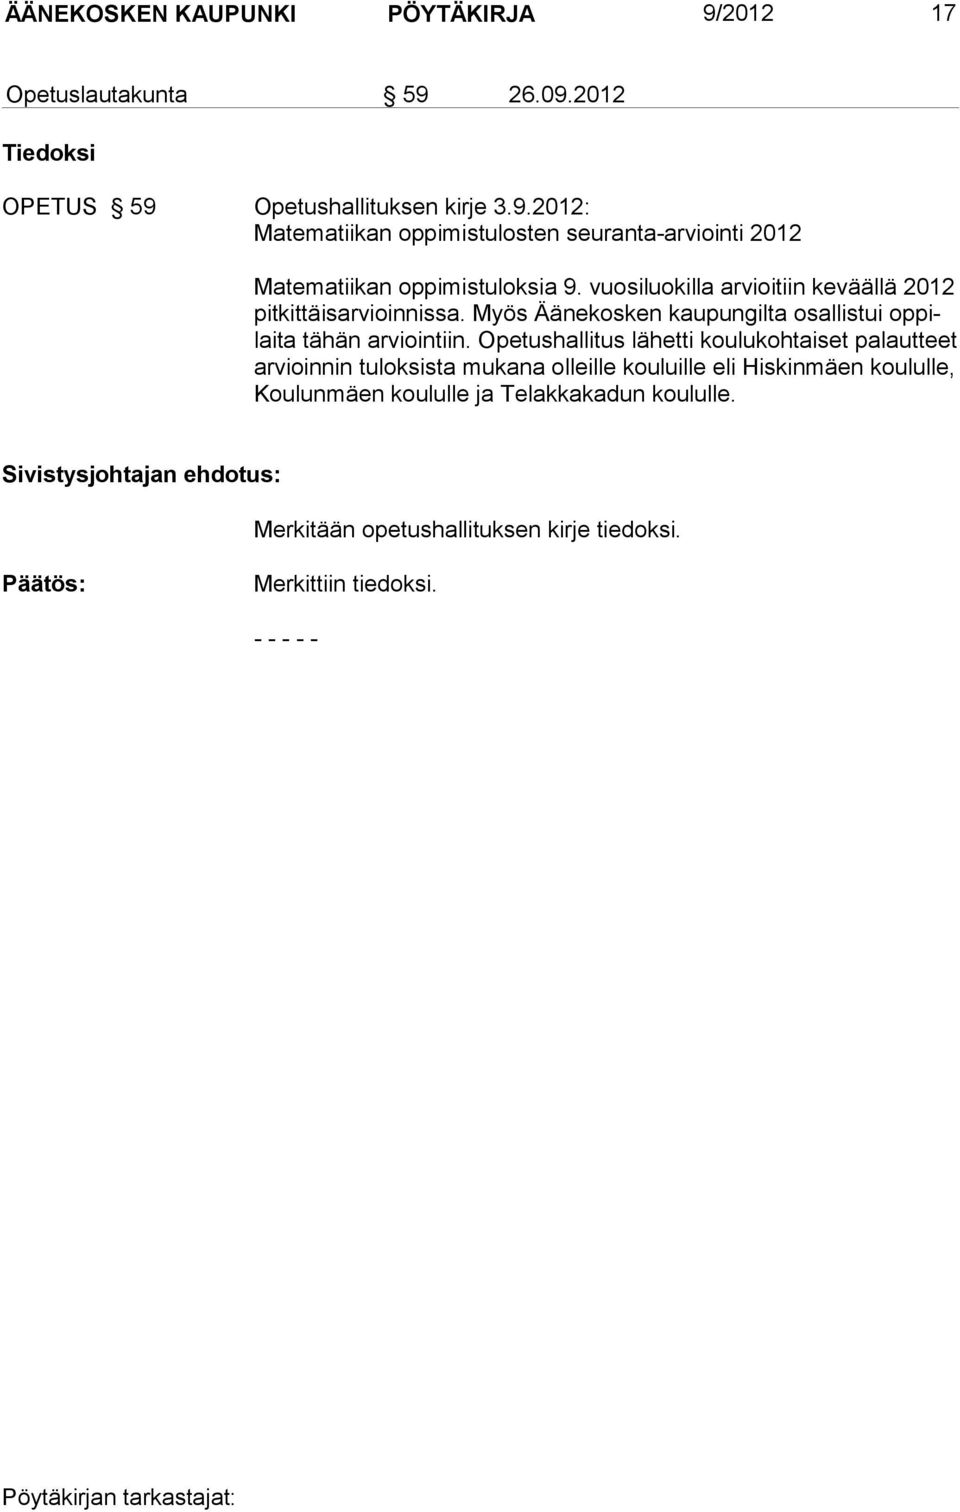 Opetushallitus lähetti koulukohtaiset palautteet ar vioinnin tuloksista mukana olleille kouluille eli Hiskinmäen koululle, Koulunmäen koululle ja